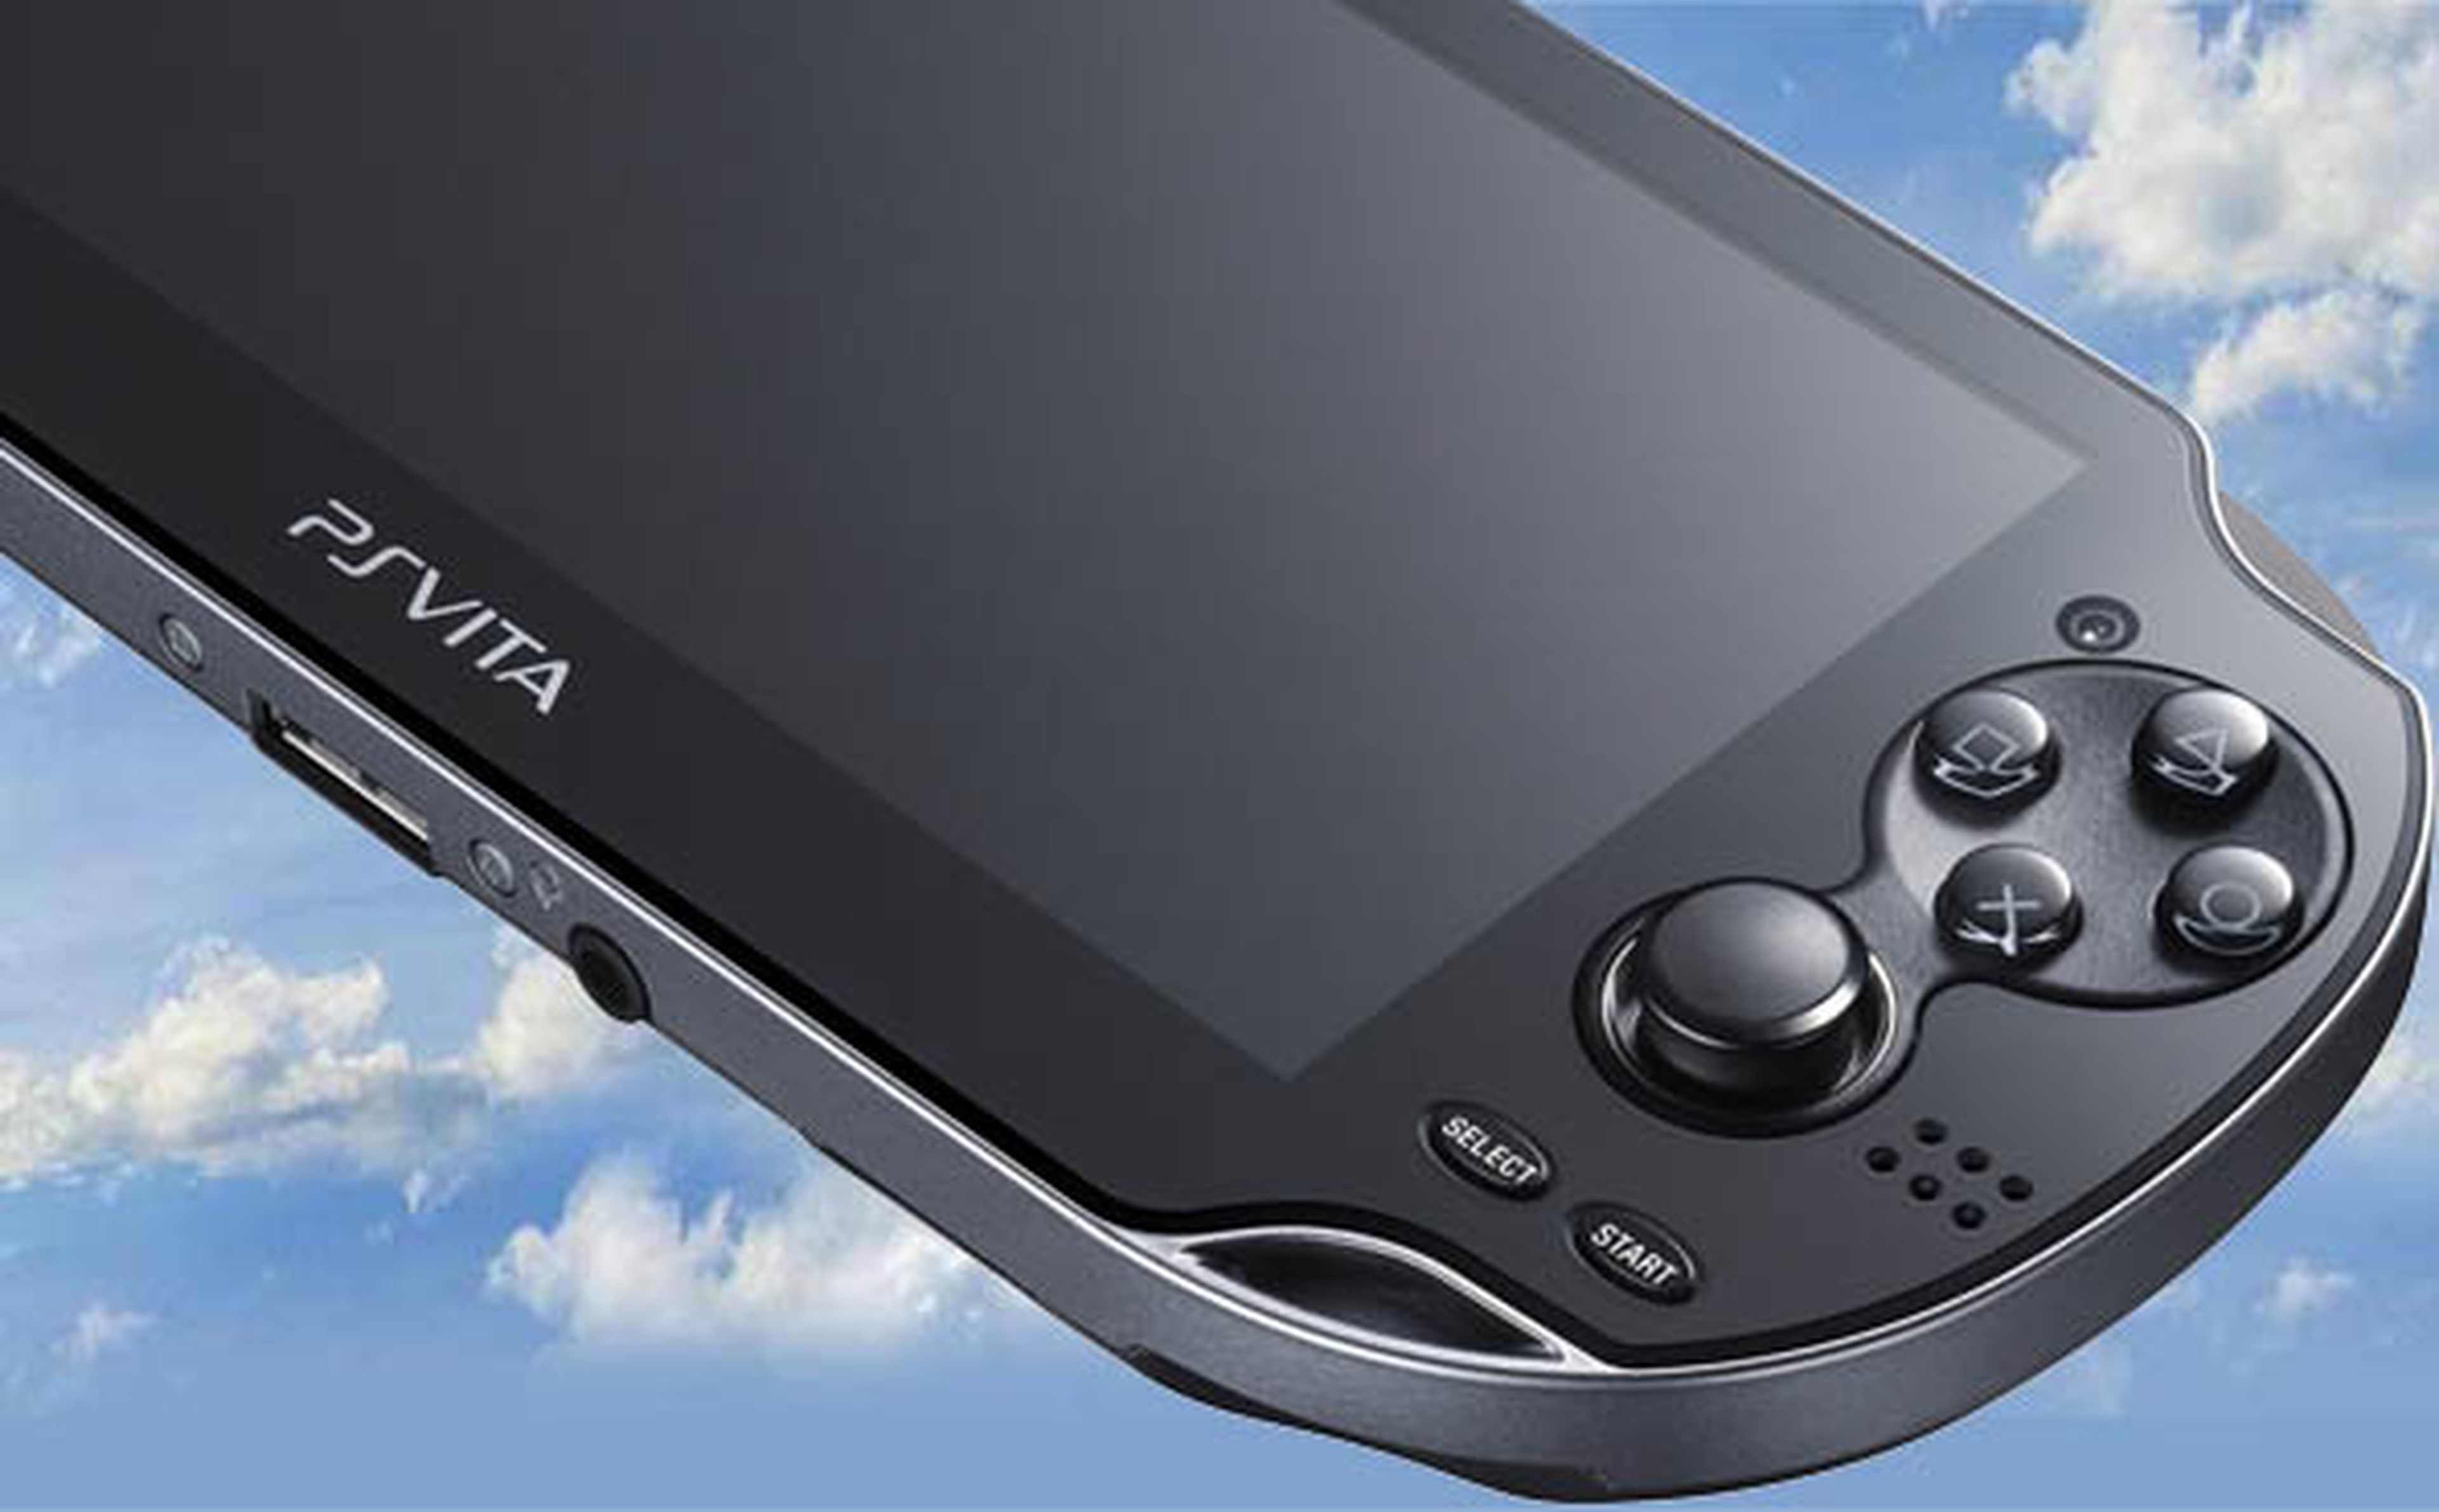 PS Vita tendrá una campaña notable